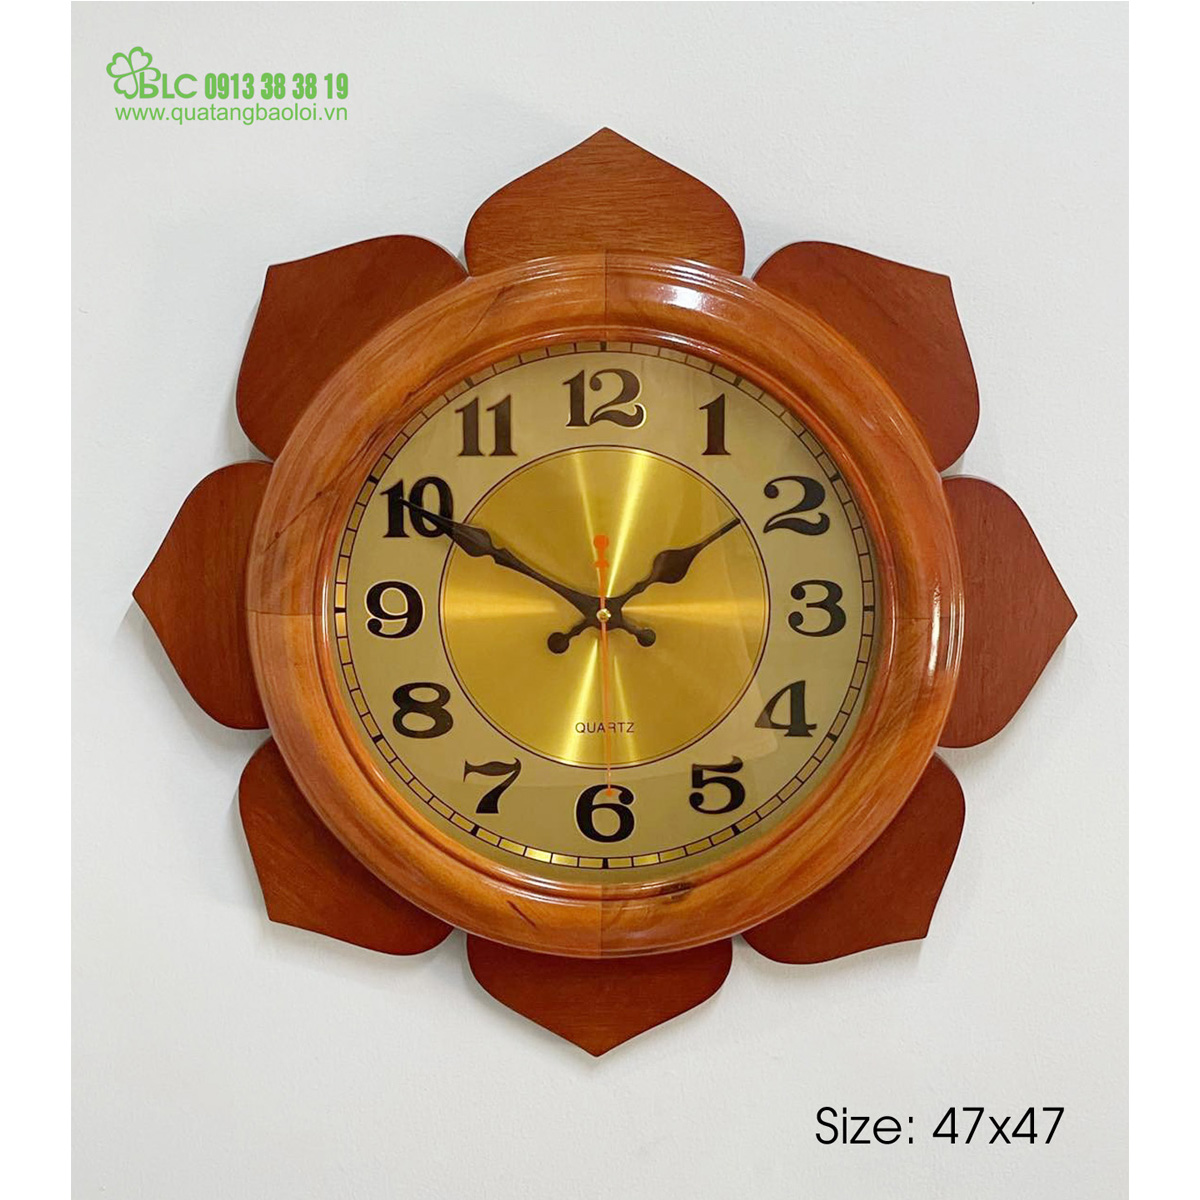 Đồng hồ treo tường Hải Phòng - DH044